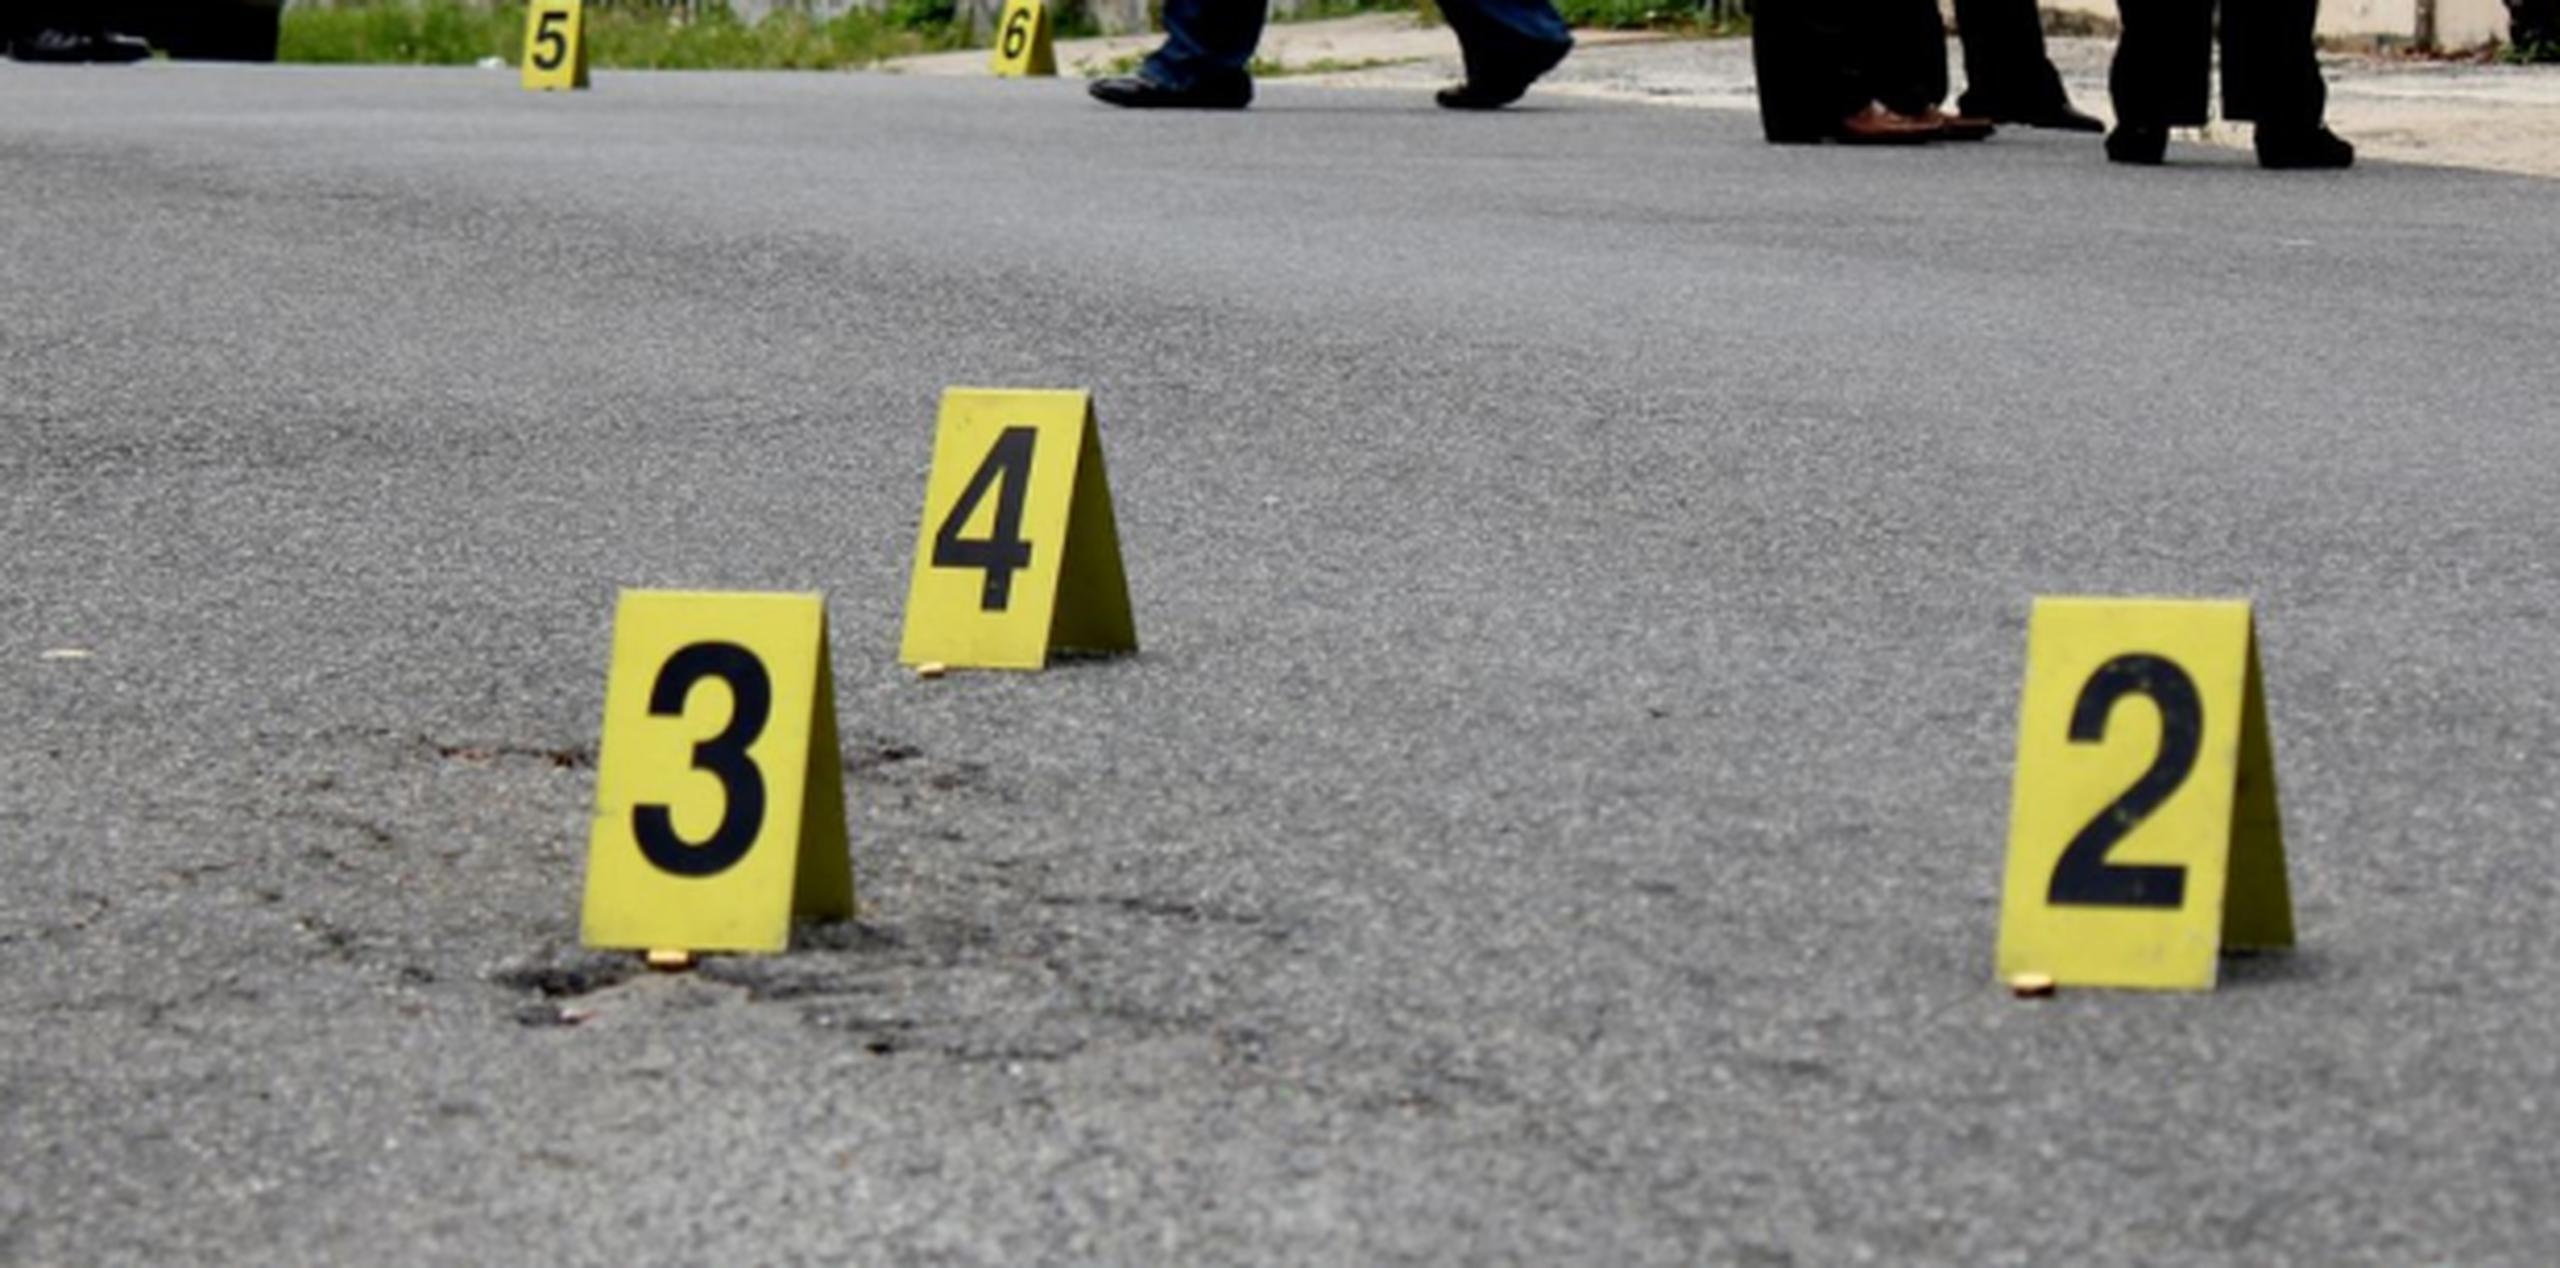 Con este asesinato suman seis los reportados durante el fin de semana en Ponce, Río Piedras, Arecibo, Canóvanas y Puerto Nuevo. (Archivo)